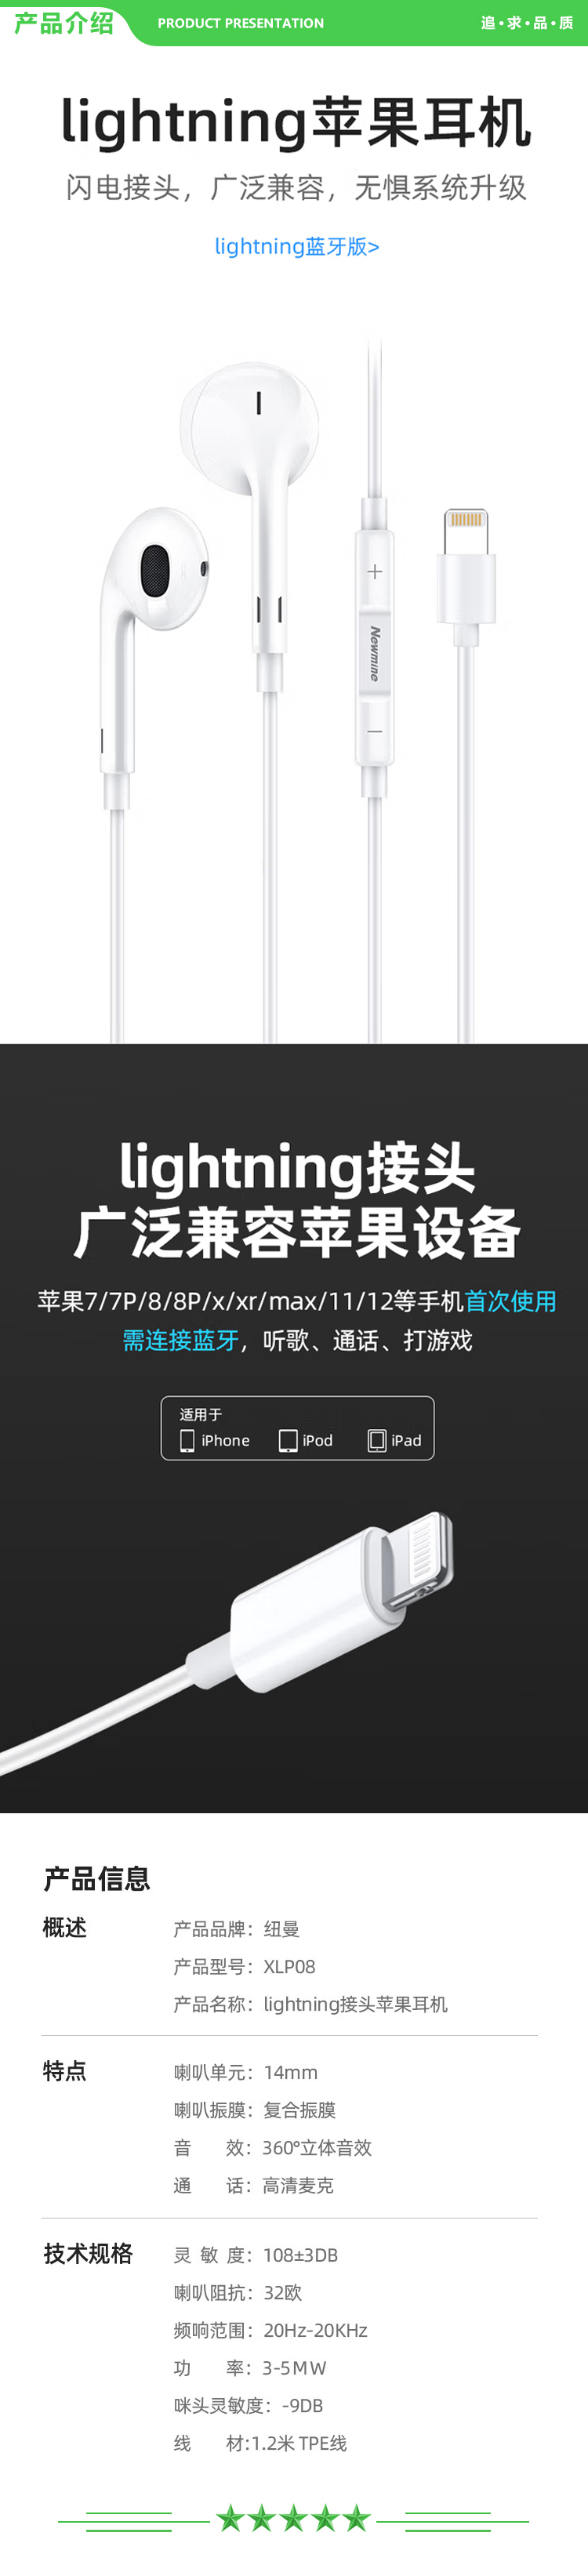 纽曼 Newmine XLP08 蓝牙版 Lightning手机有线耳机闪电接头扁头半入耳式适用于苹果iPhone6s 7 8plus XS 11 12等 .jpg